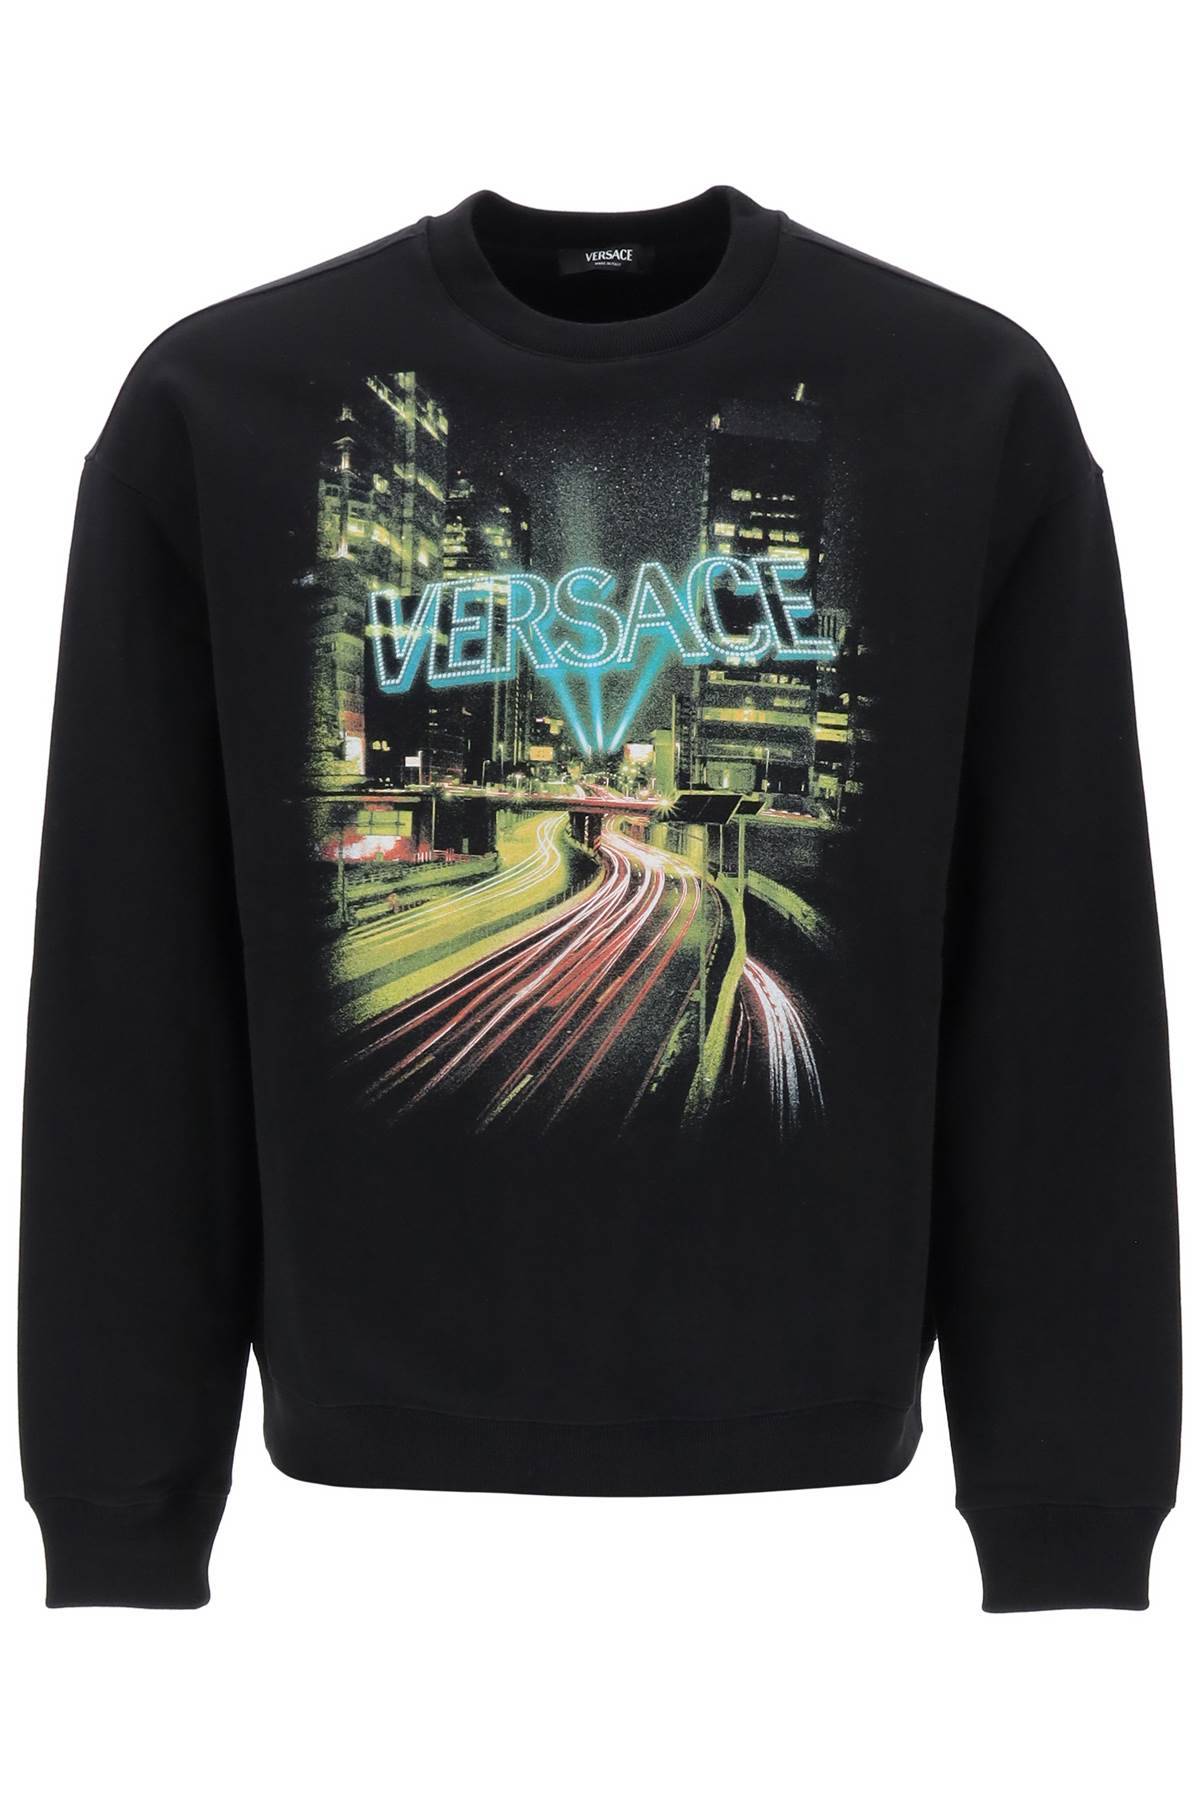 Versace VERSACE crew-neck sweatshirt with city lights print